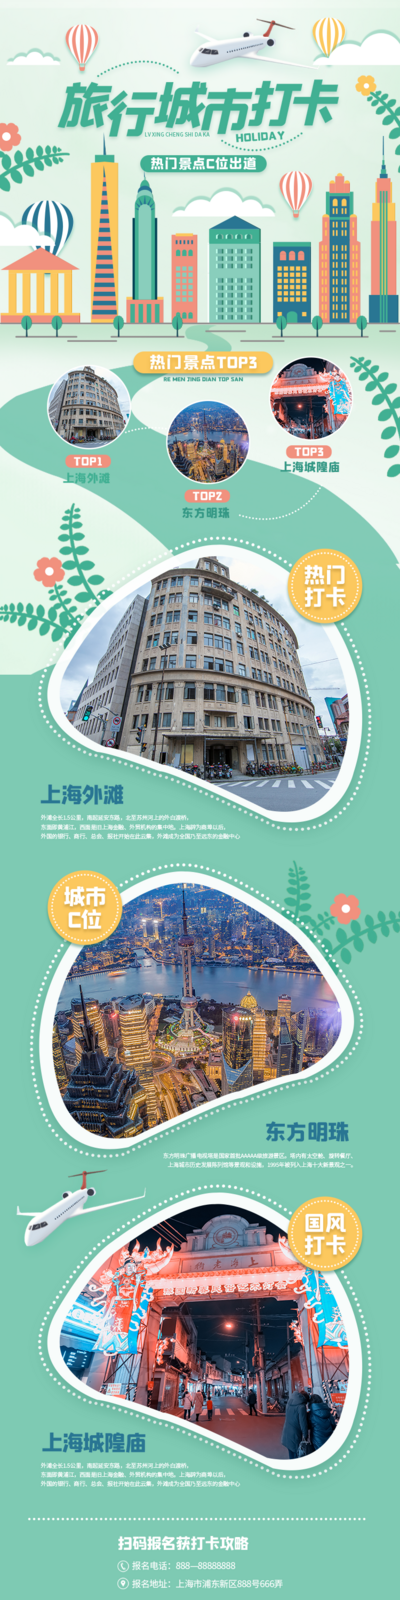 南门网 广告 旅游 长图 旅行 打卡 城市 上海 地标 风景